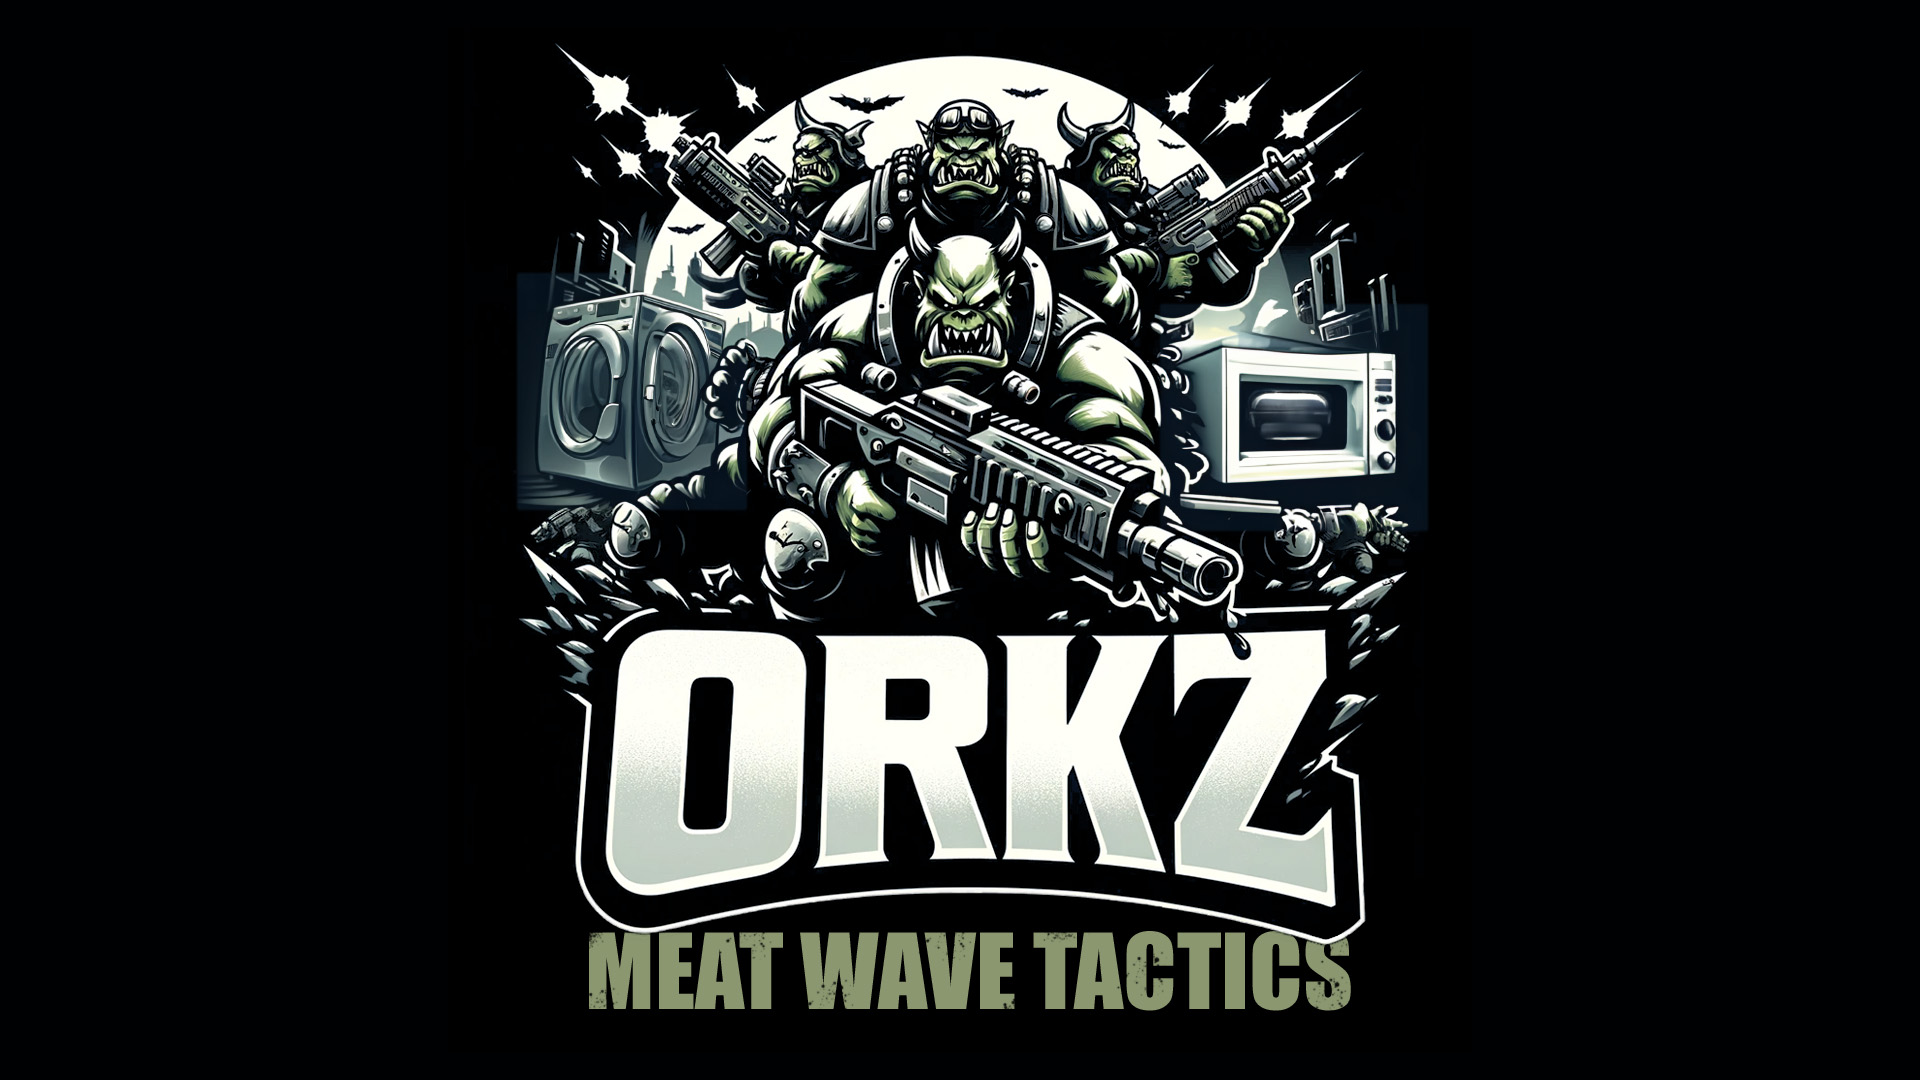 ORKZ - Meat Wave Tactics